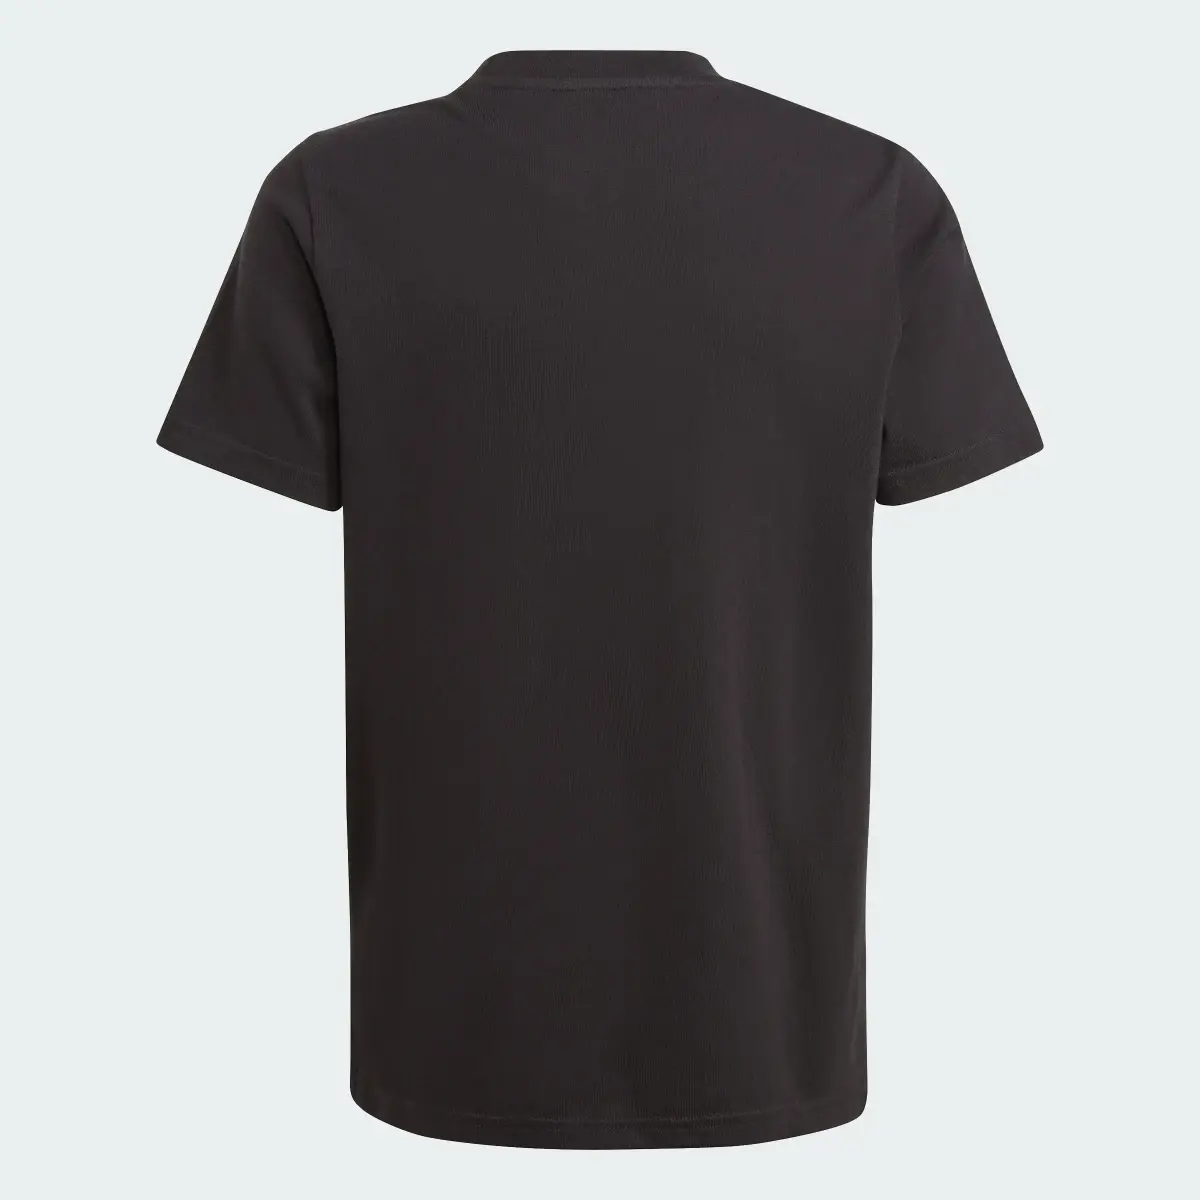 Adidas T-shirt Graphic All Blacks. 2